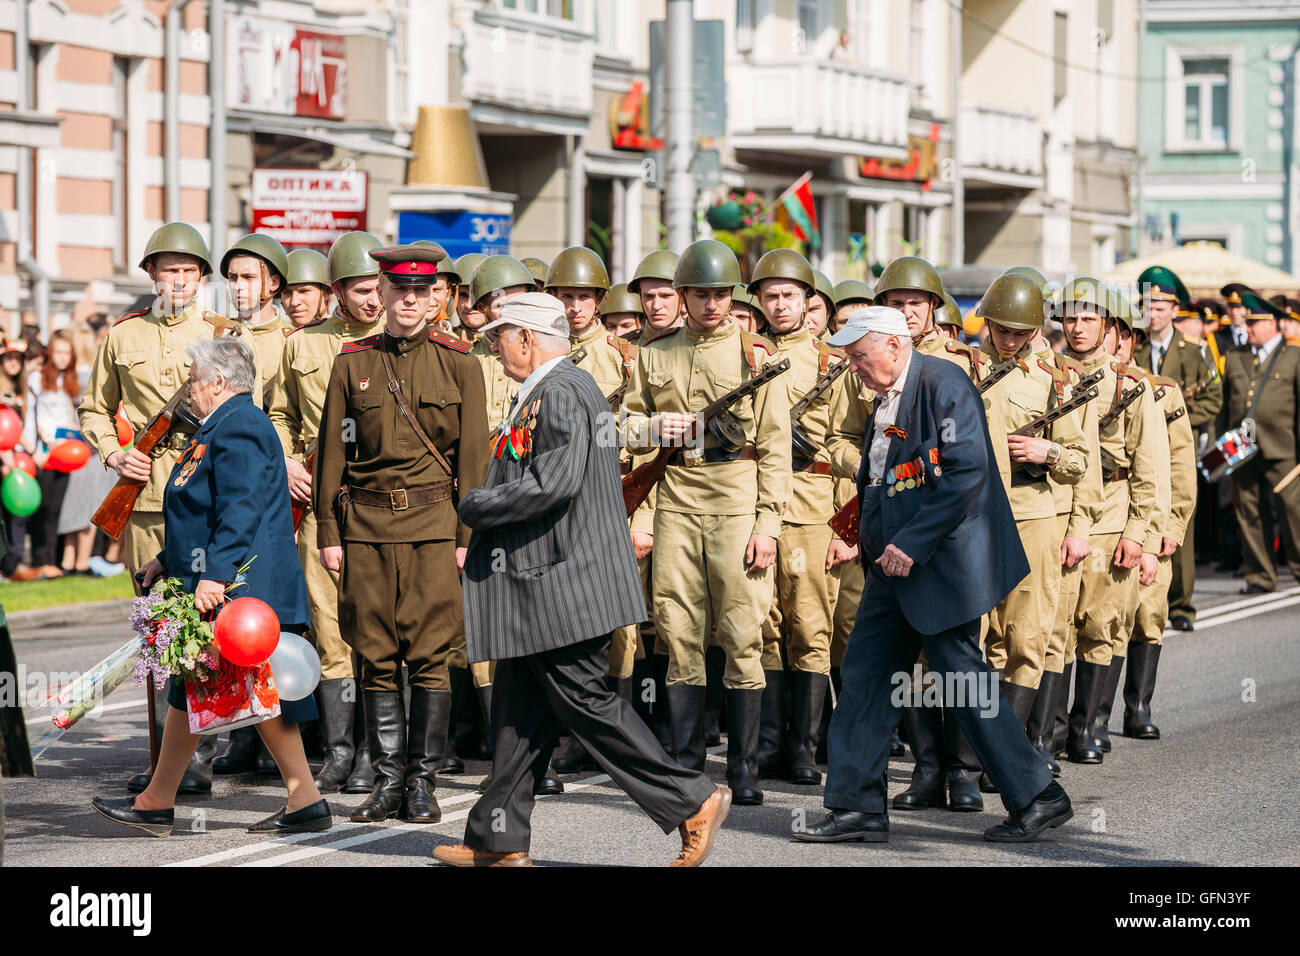 Ältere Menschen geehrt WW2 Veterans Pass in der Nähe das Line-Up von bewaffneten Soldaten In sowjetische WWII Uniform, Offizier im Vordergrund. Re-enactment P Stockfoto